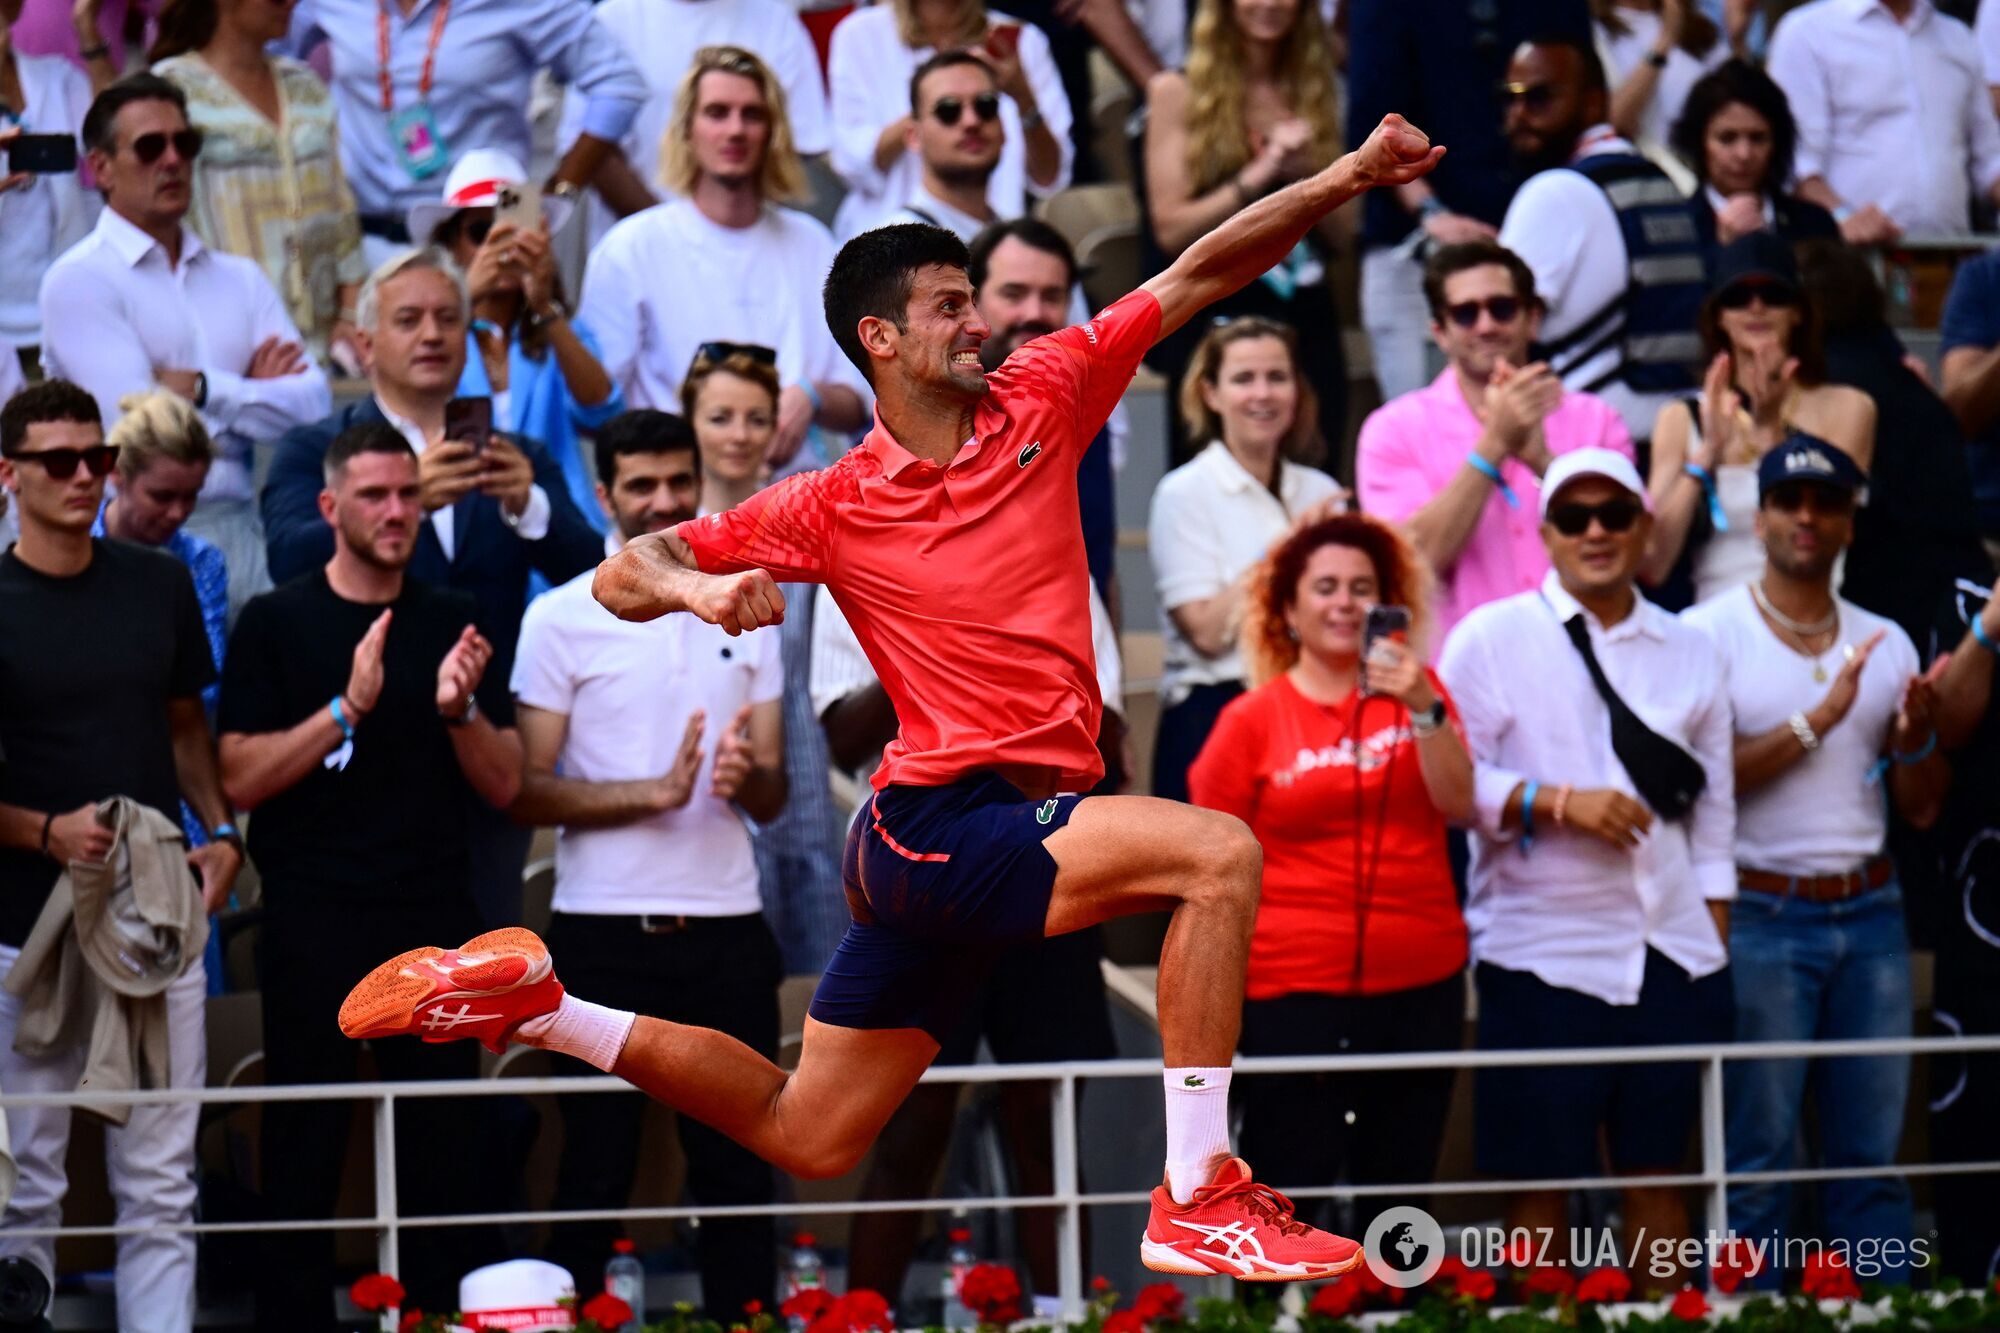 Джокович выиграл Roland Garros, установив абсолютный рекорд мирового тенниса